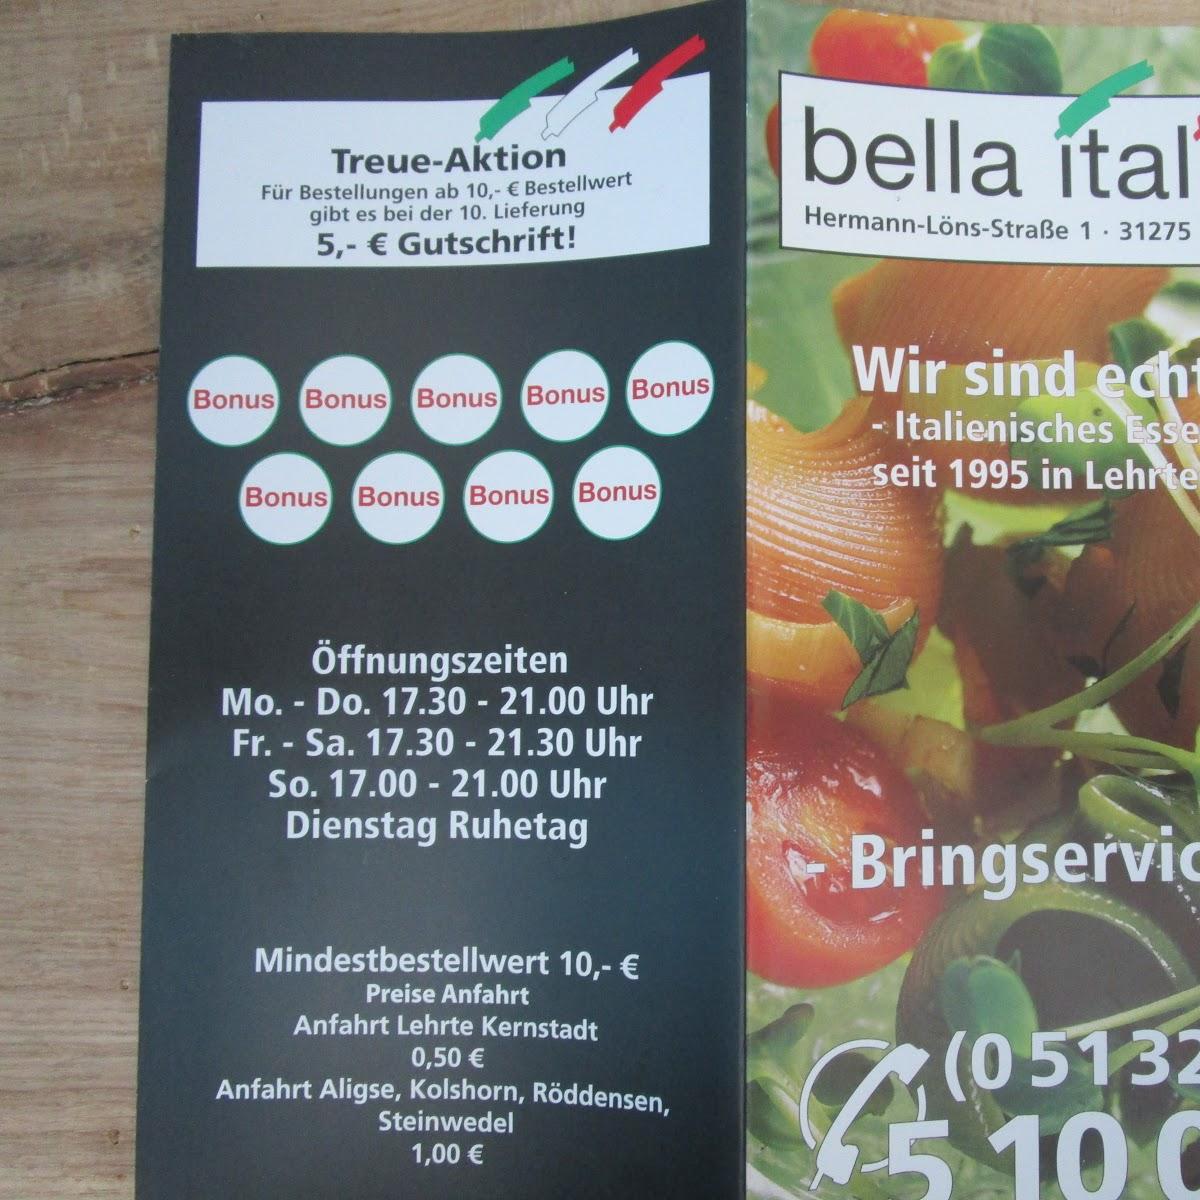 Restaurant "Bella Italia" in Lehrte